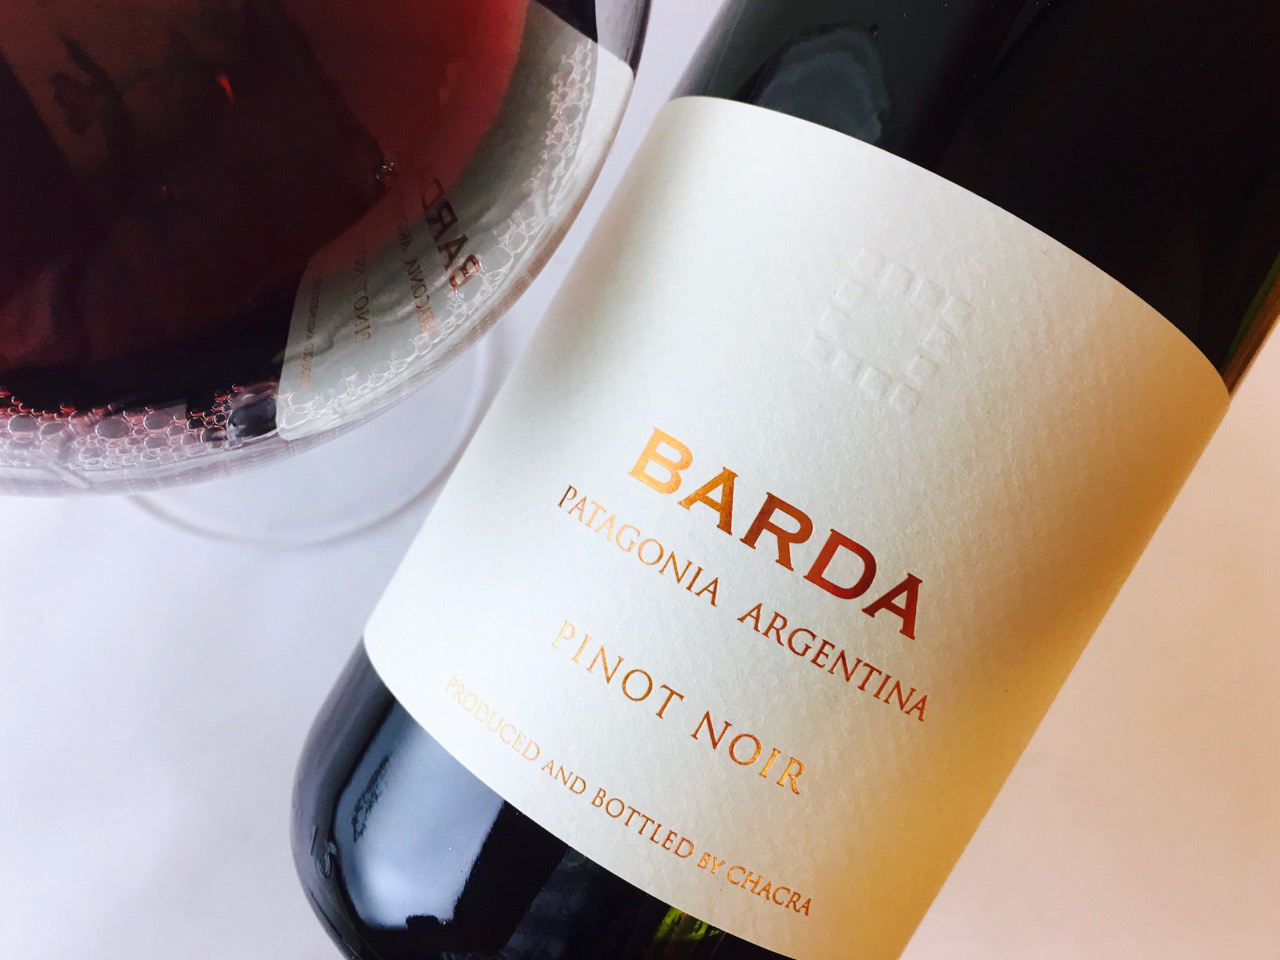 2013 Bodega Chacra Pinot Noir Barda Patagonia